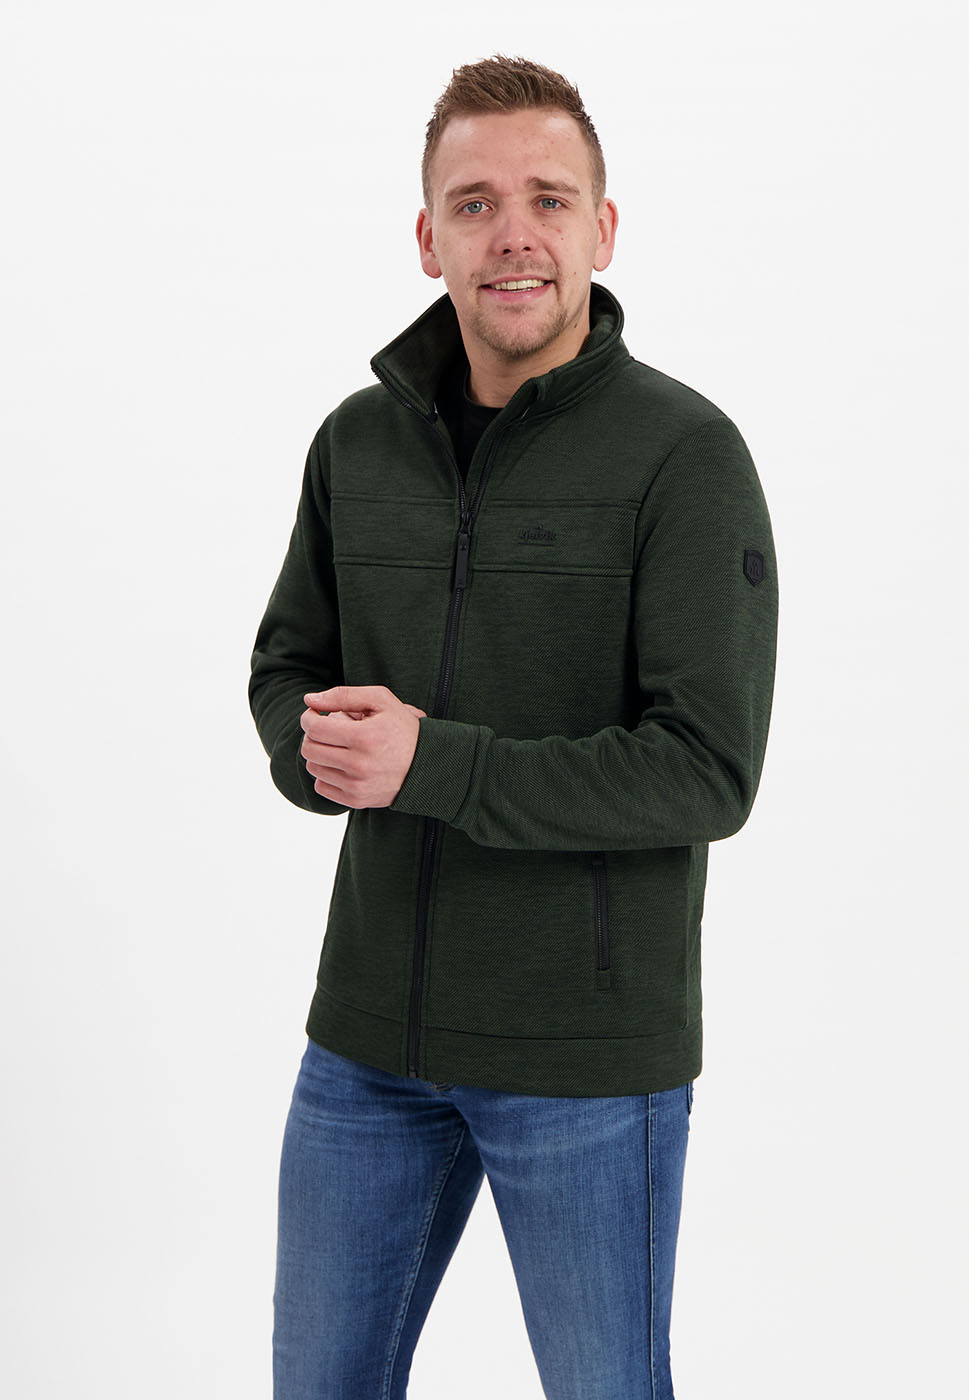 Kjelvik Scandinavian Clothing - Men Knitwear Wilco Green